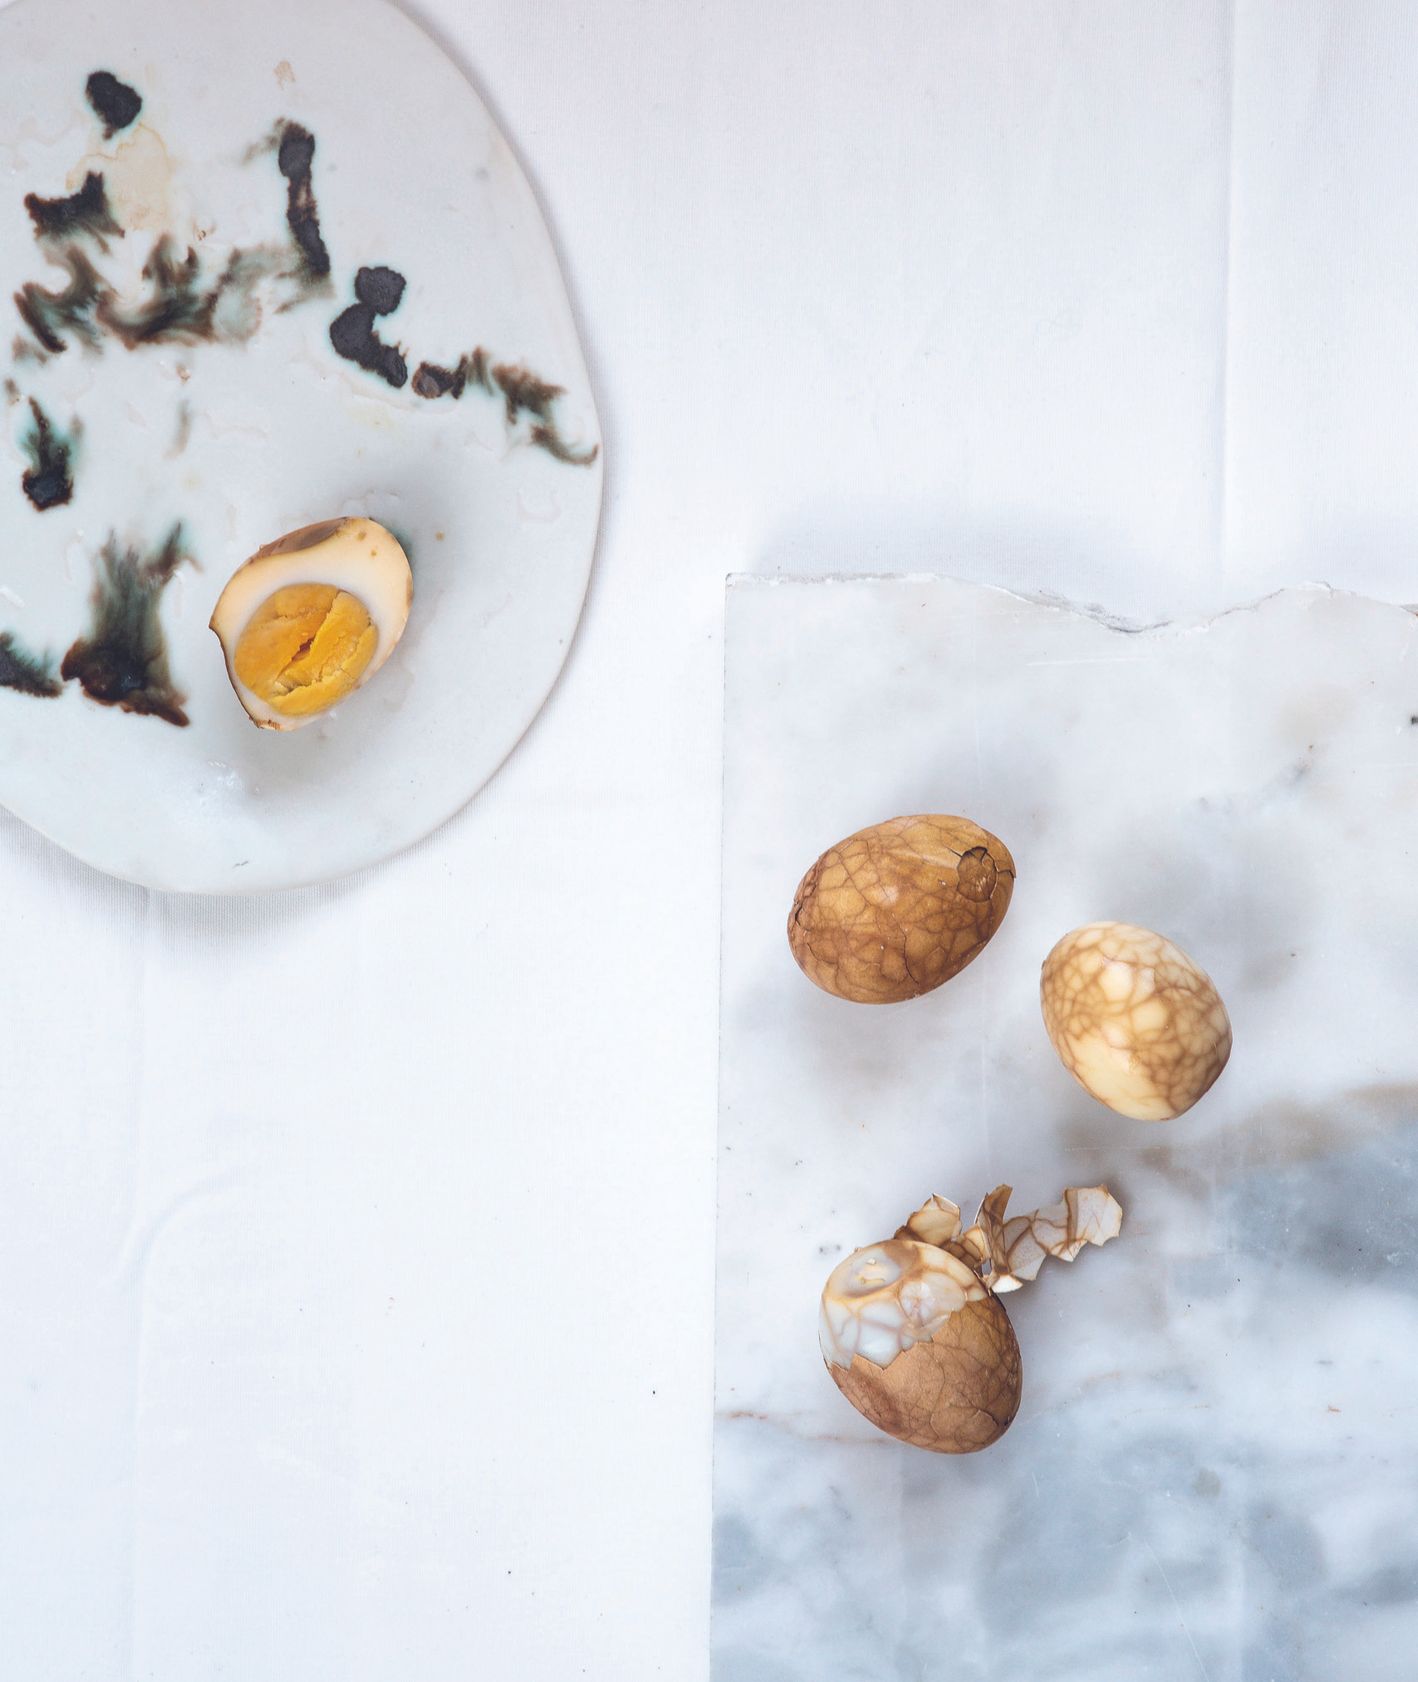 Sprawdź jak przygotować jajka gotowane w herbacie - PRZEPIS (fot. Jakub Stanek)